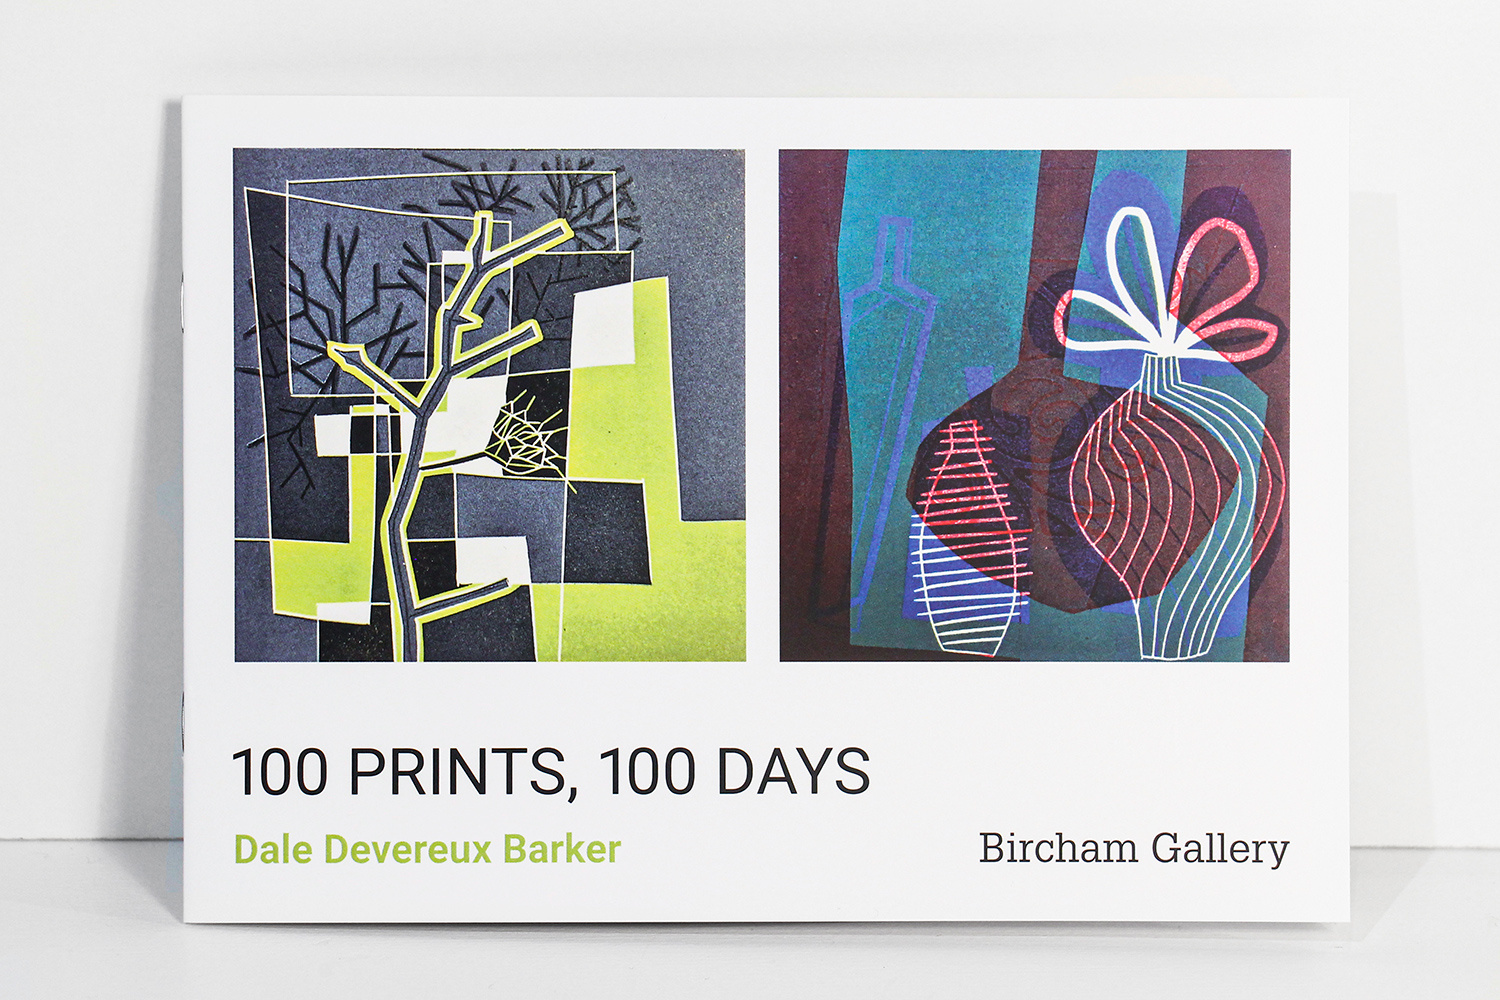 100 Prints, 100 Days Exhibition Catalogue by Dale Devereux Barker